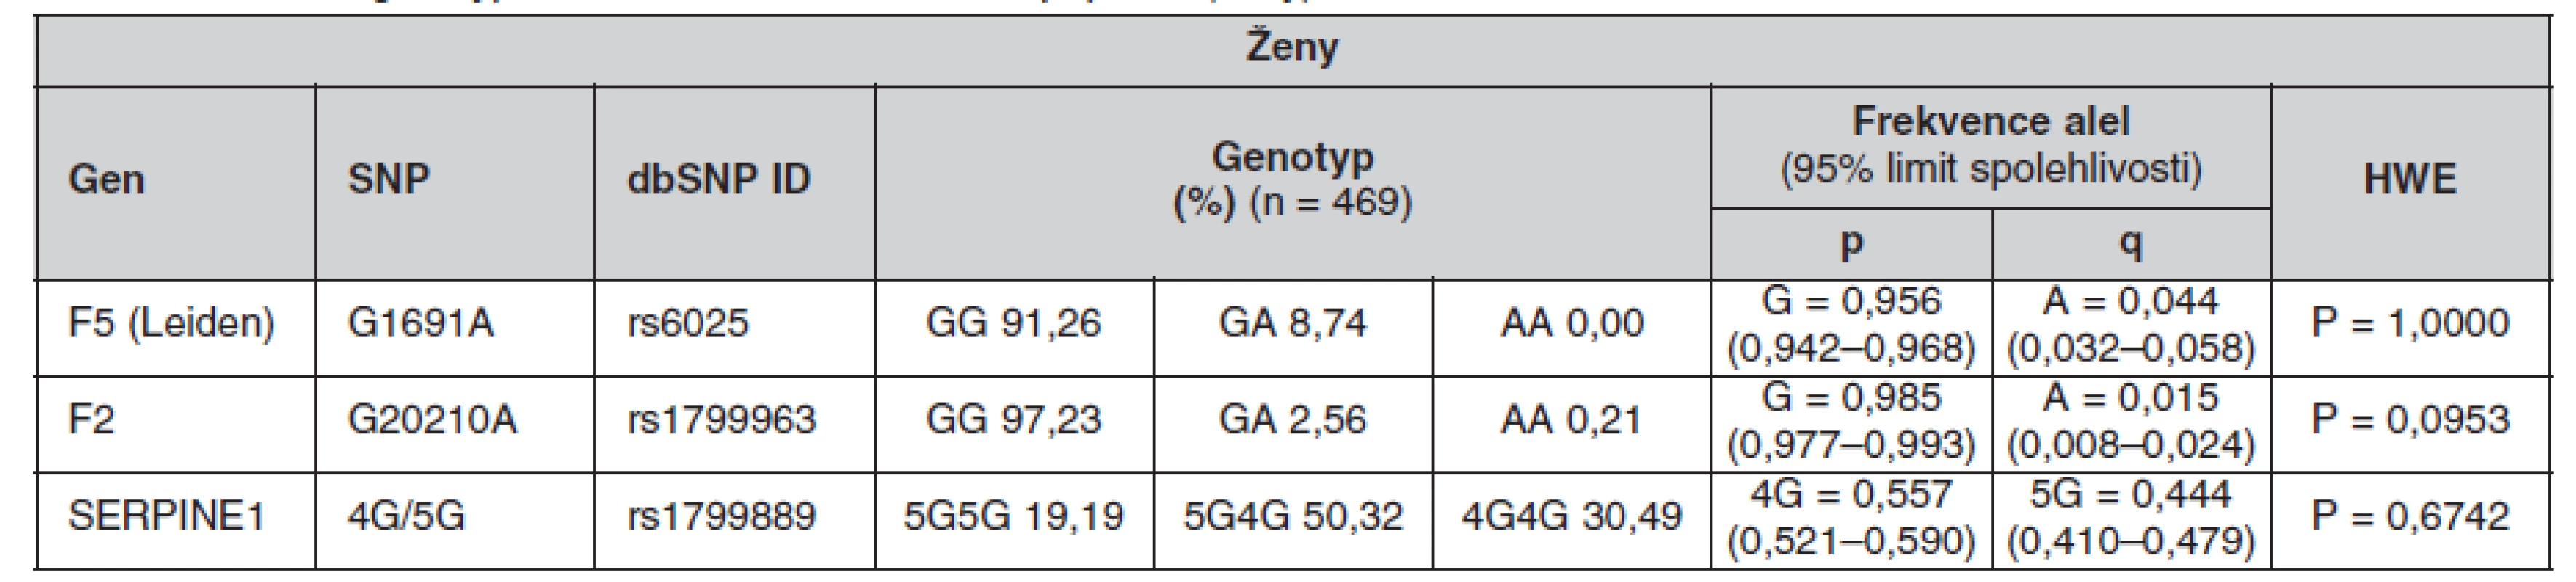 Frekvence genotypů a alel ve sledované české populaci (ženy)